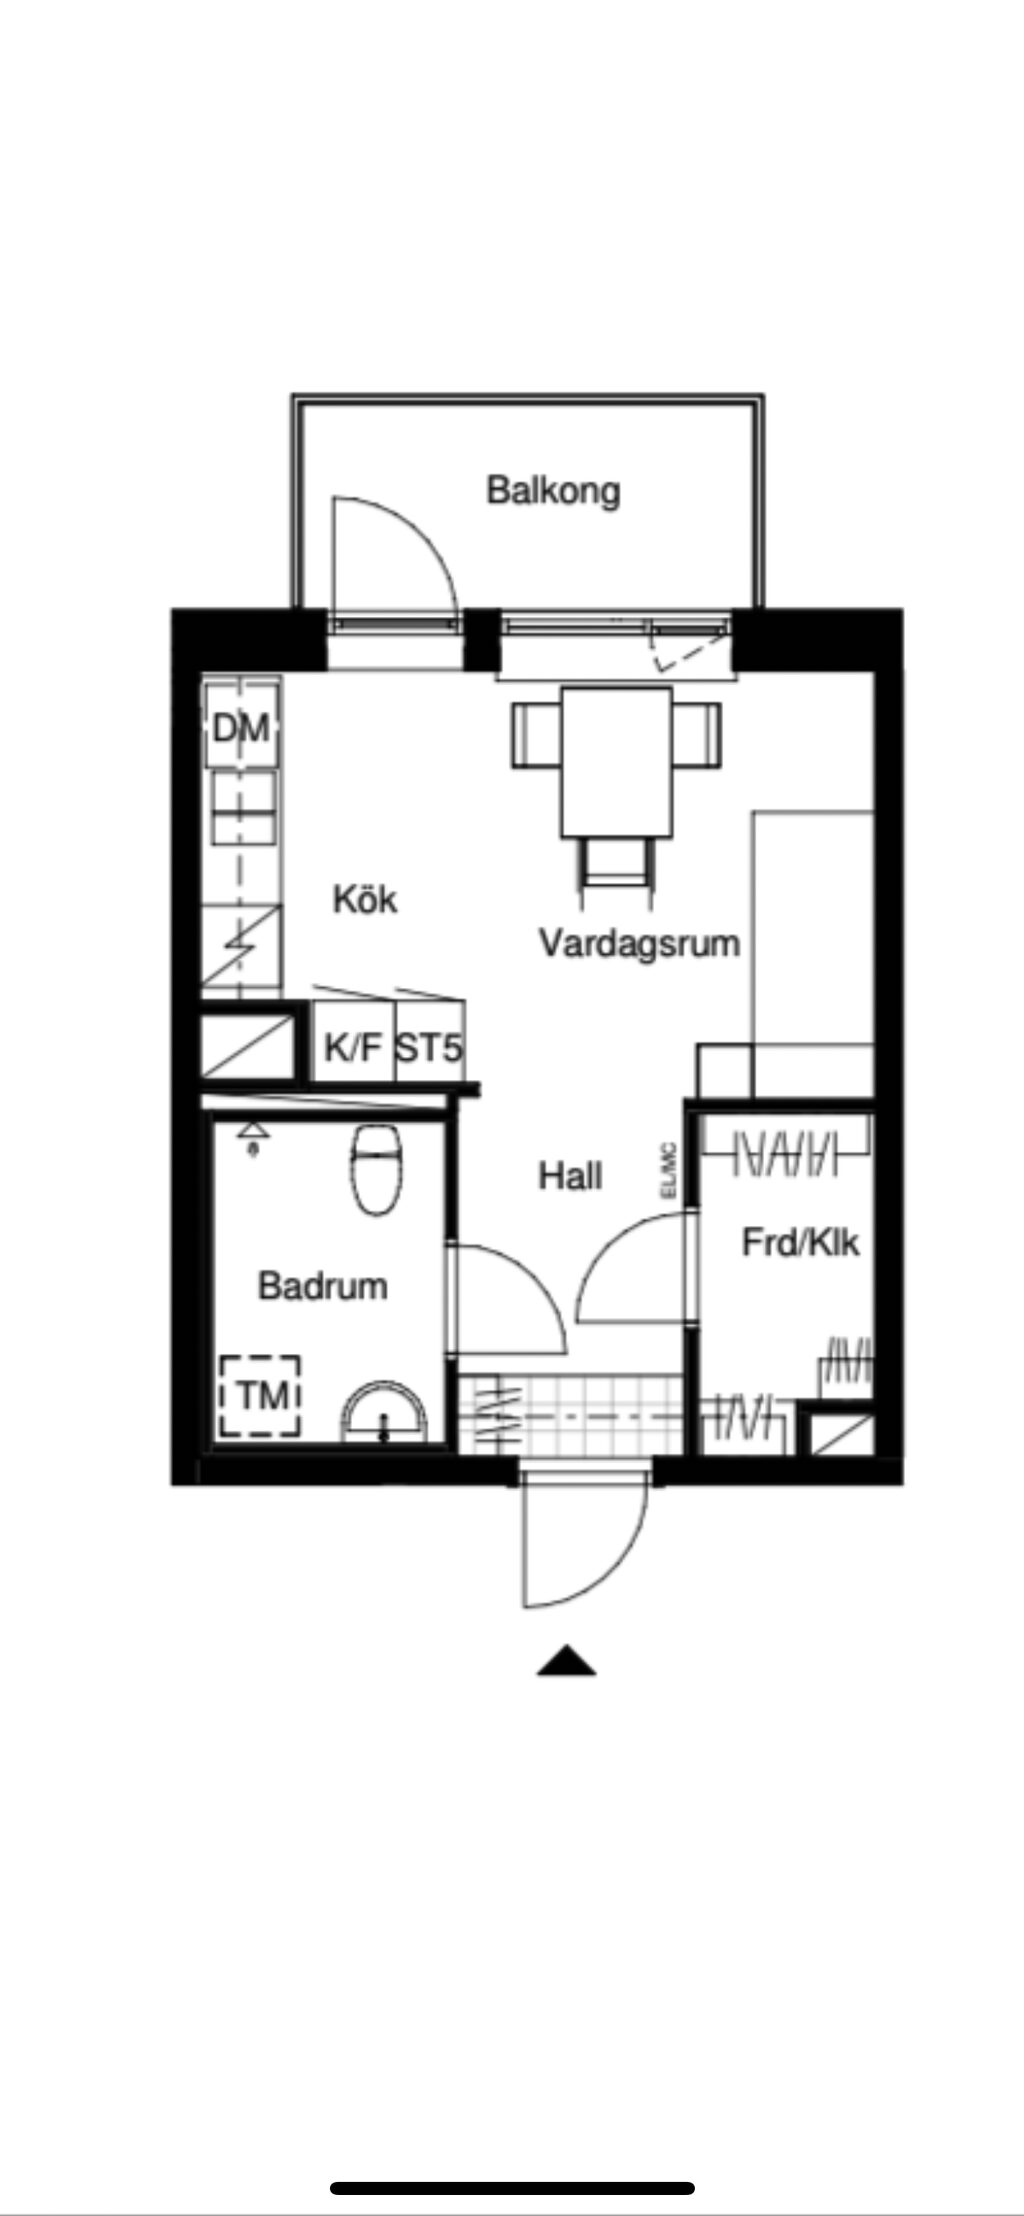 Lägenhetsbyte - Astrabacken 8A, 151 36 Södertälje